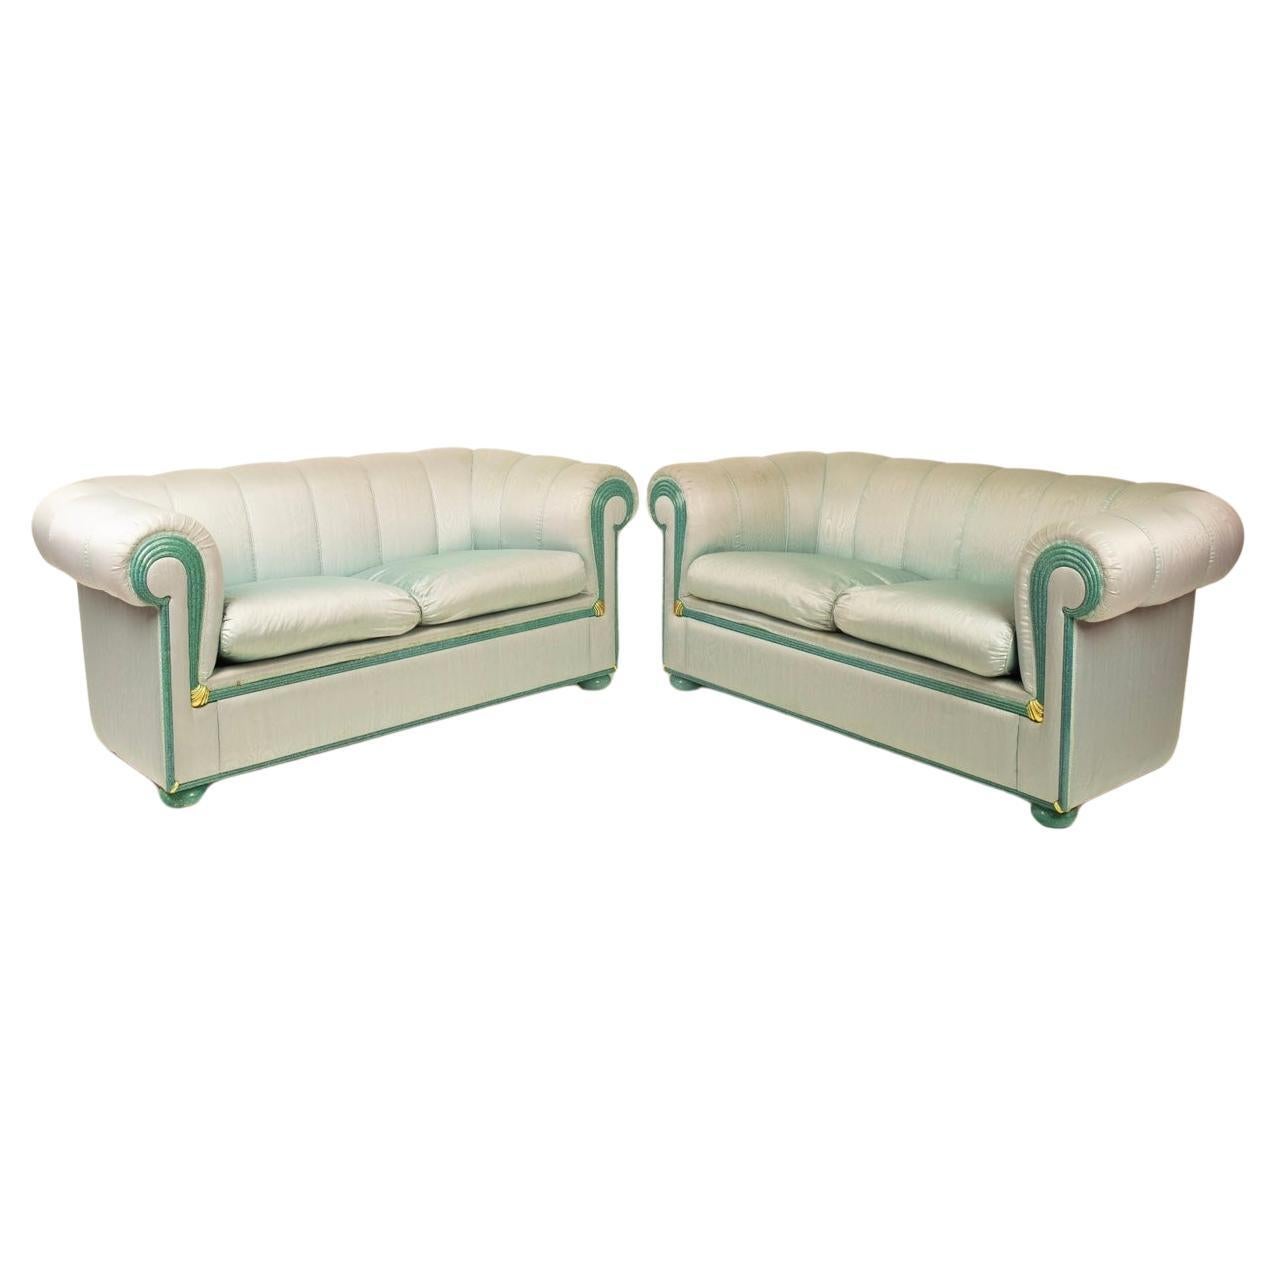 Pair of sofas by Fabrizio Smania for Smania Studio Interni For Sale